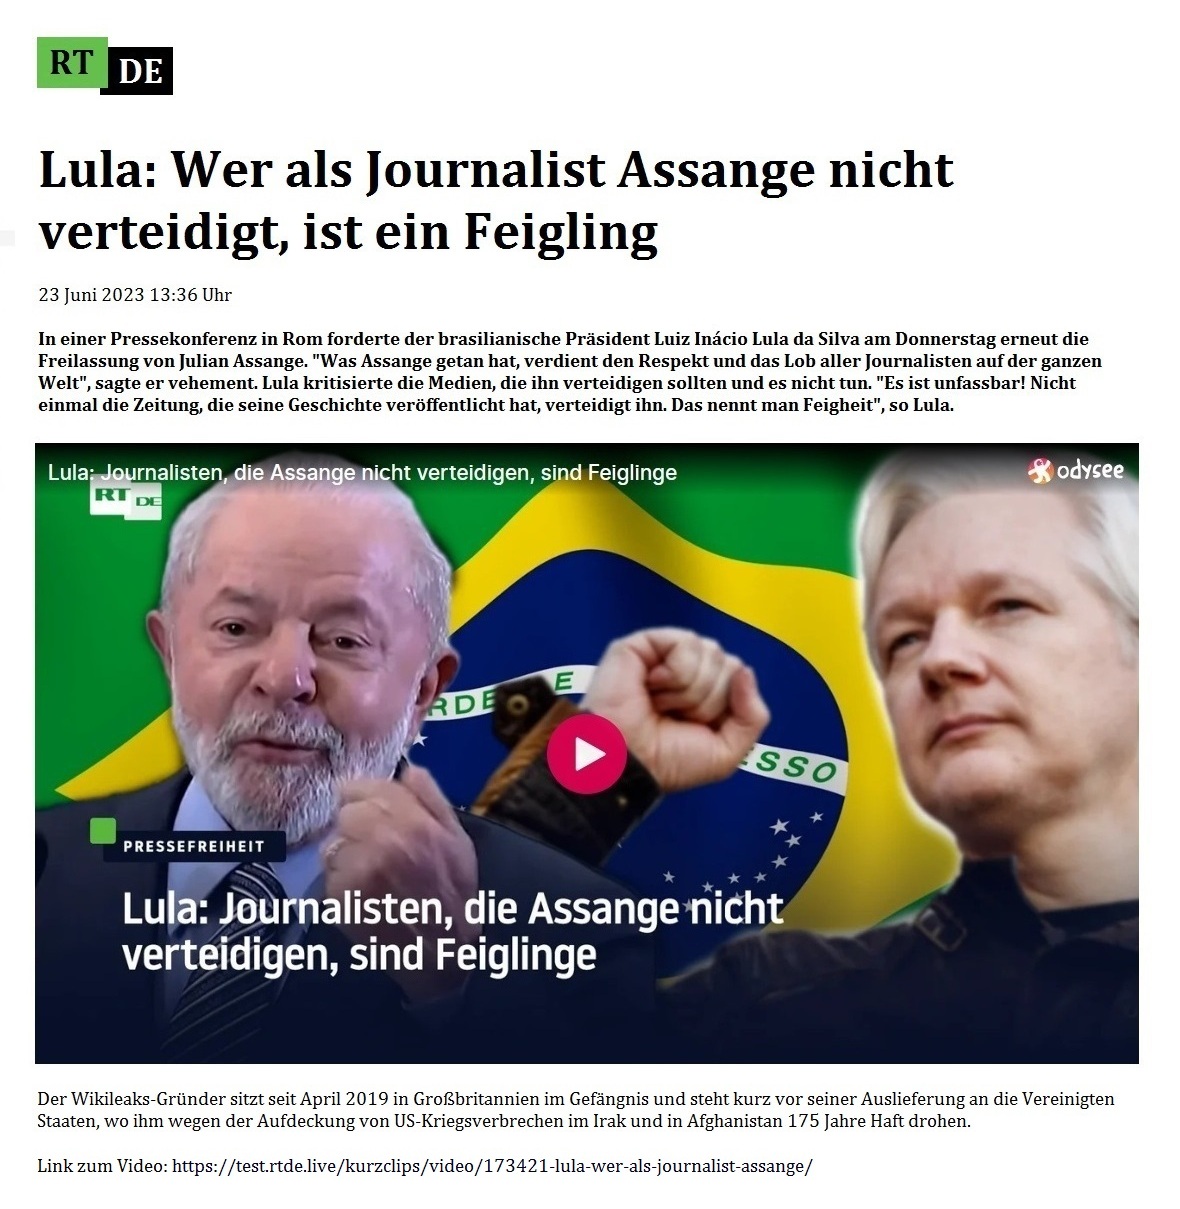 Lula: Wer als Journalist Assange nicht verteidigt, ist ein Feigling - 23 Juni 2023 13:36 Uhr - In einer Pressekonferenz in Rom forderte der brasilianische Prsident Luiz Incio Lula da Silva am Donnerstag erneut die Freilassung von Julian Assange. 'Was Assange getan hat, verdient den Respekt und das Lob aller Journalisten auf der ganzen Welt', sagte er vehement. Lula kritisierte die Medien, die ihn verteidigen sollten und es nicht tun. 'Es ist unfassbar! Nicht einmal die Zeitung, die seine Geschichte verffentlicht hat, verteidigt ihn. Das nennt man Feigheit', so Lula. - 23 Juni 2023 13:36 Uhr - RT DE - Link zum Video: https://test.rtde.live/kurzclips/video/173421-lula-wer-als-journalist-assange/